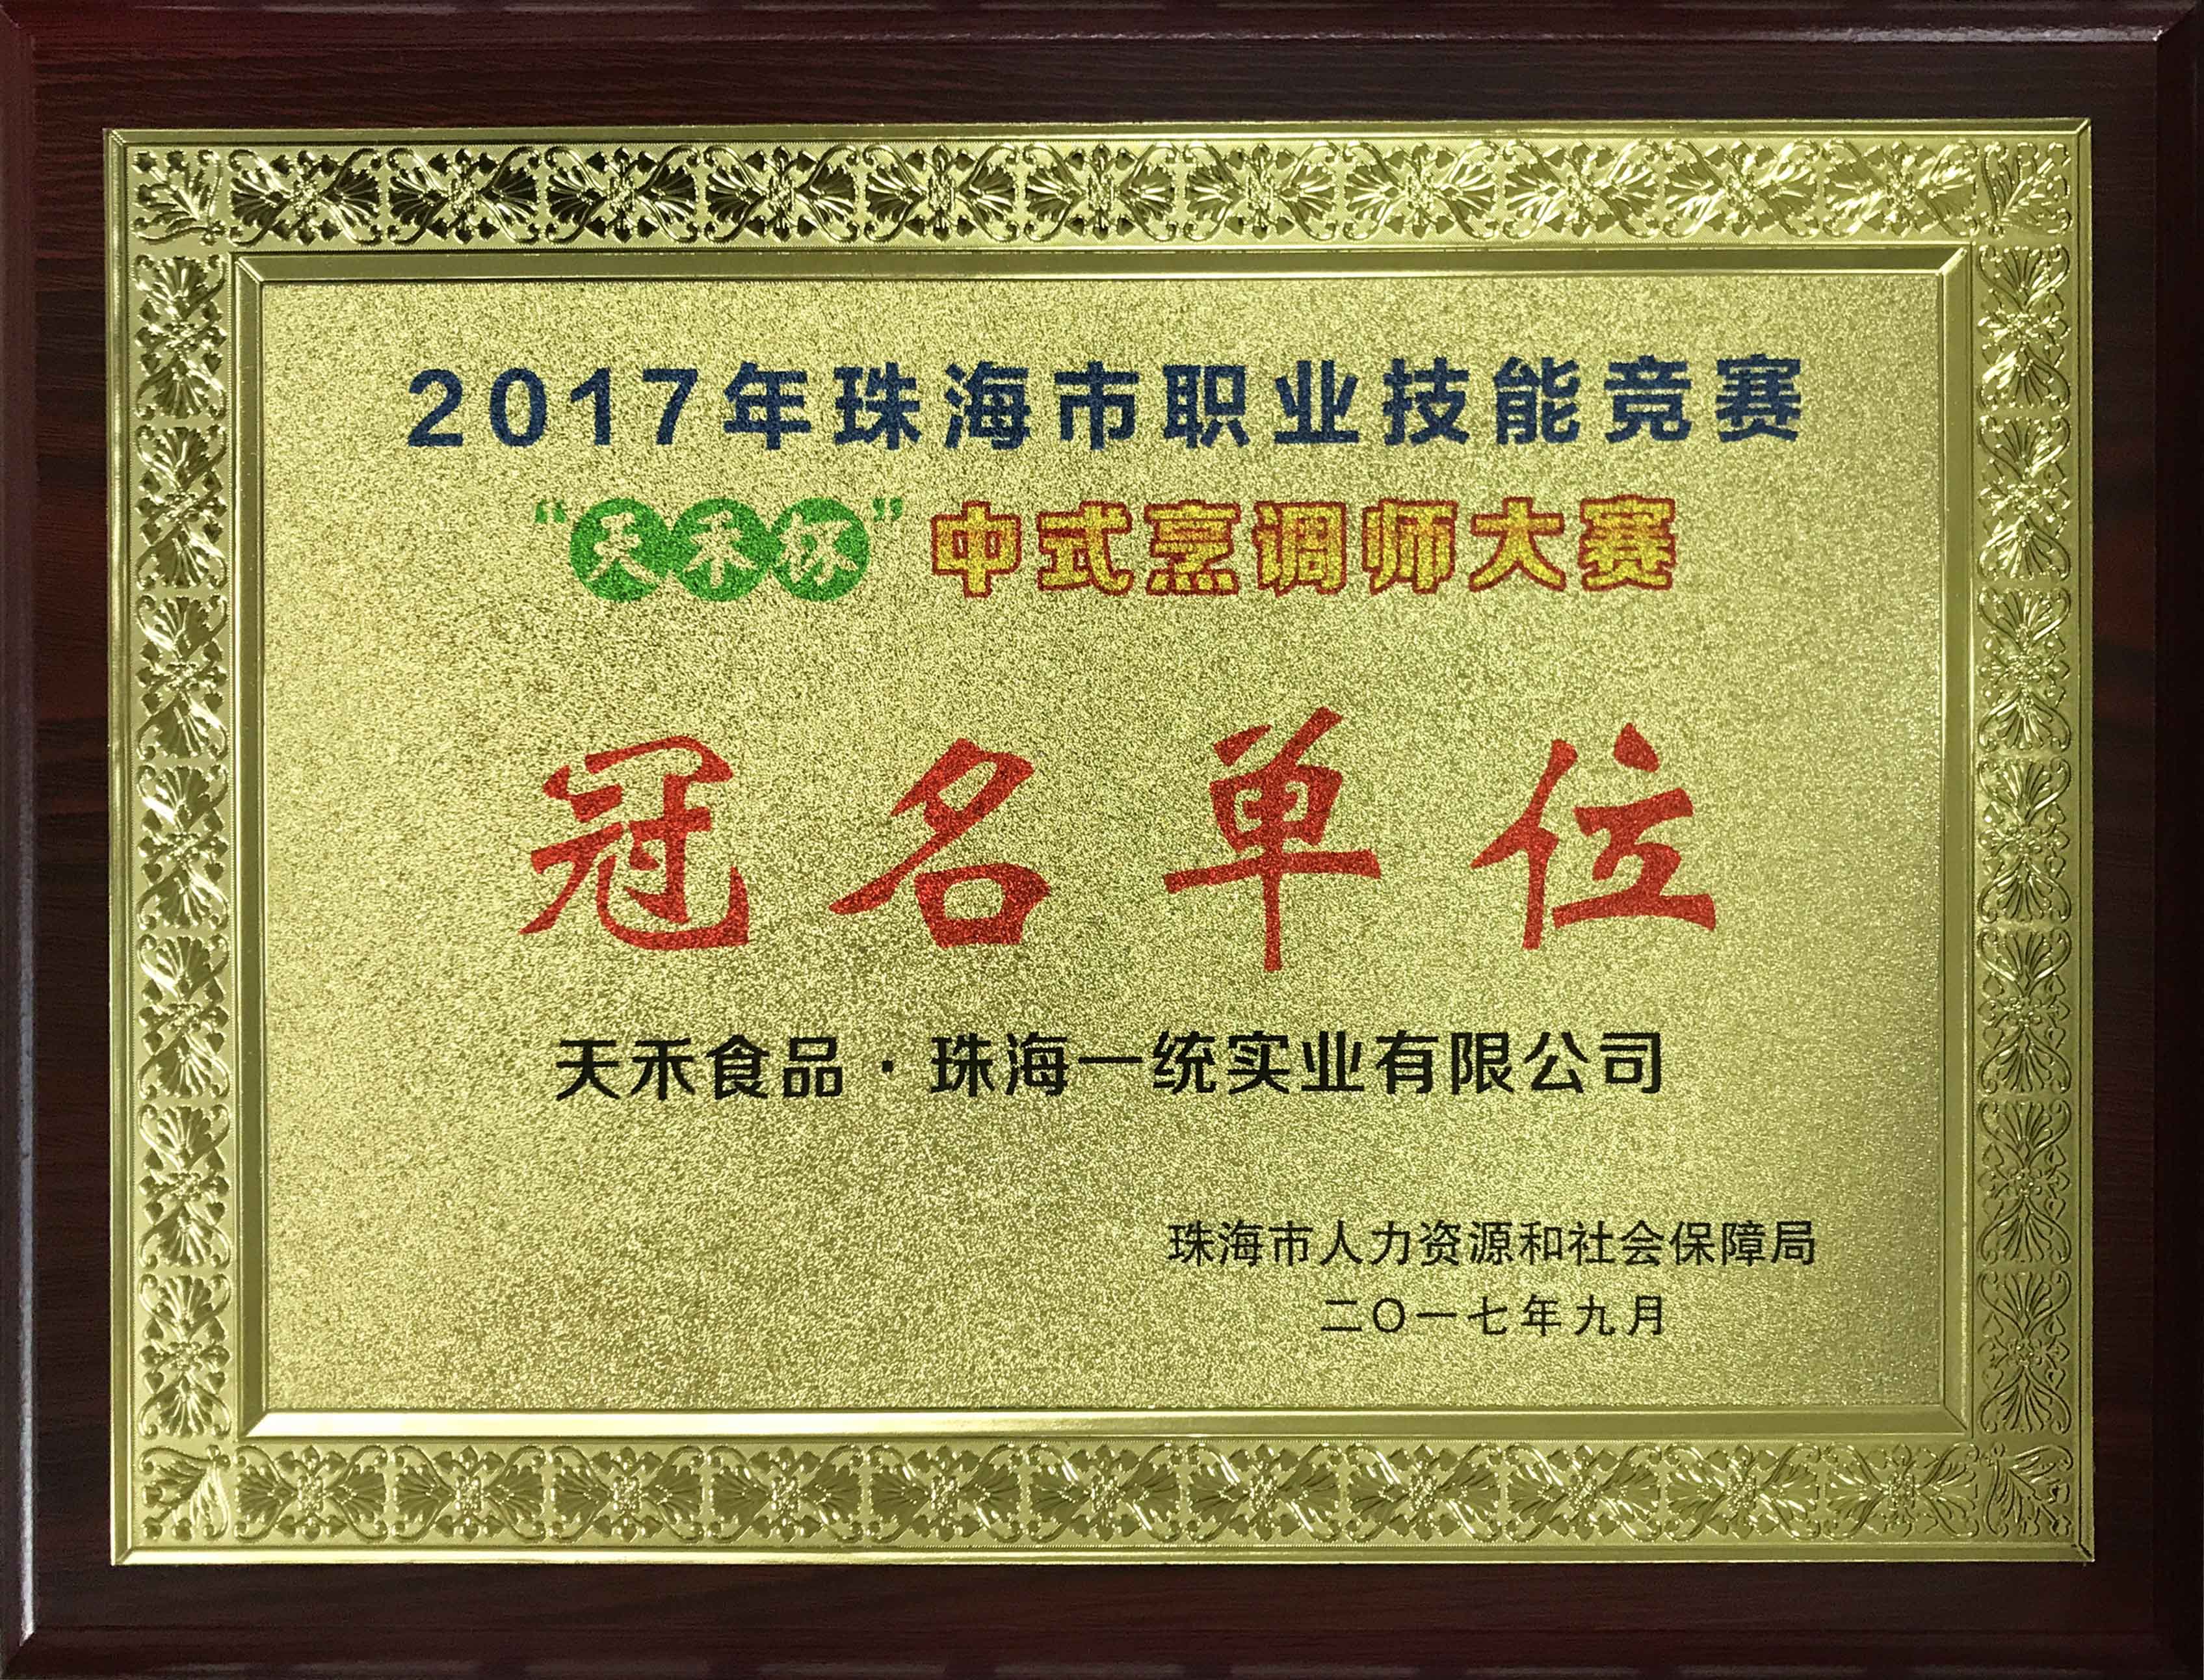 华体汇体育app杯中式烹调师大赛冠名单位